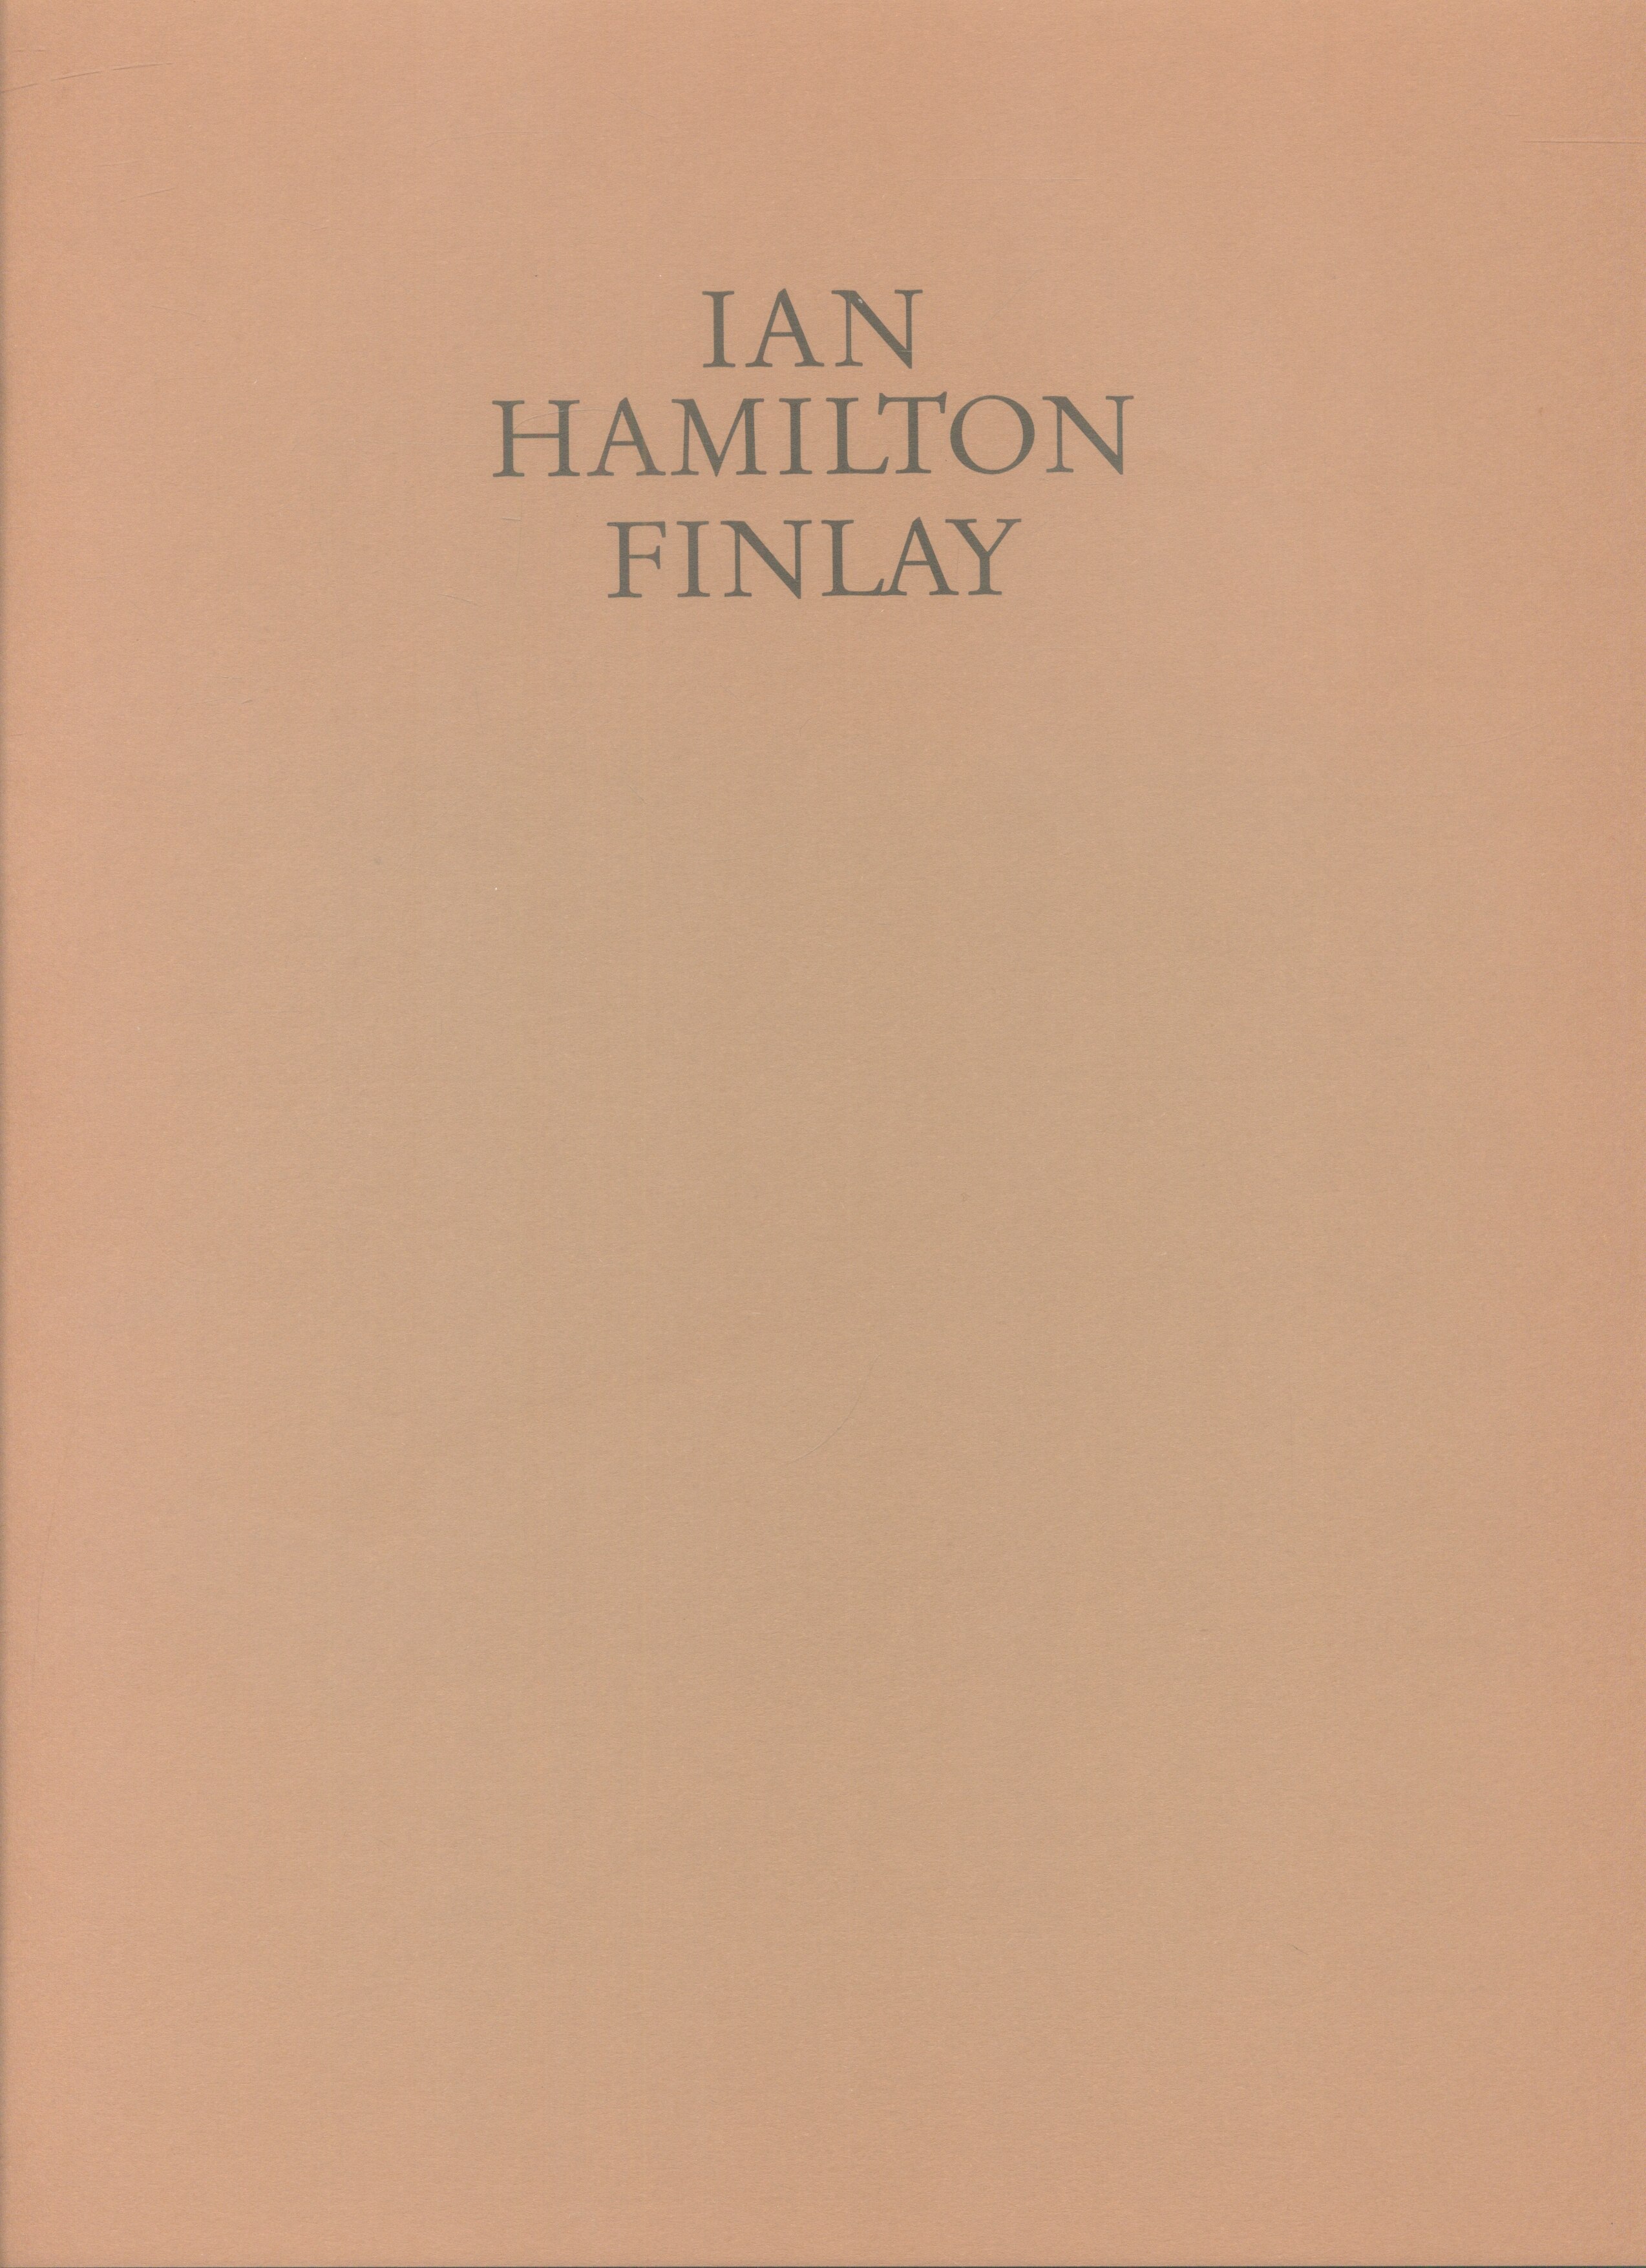 IAN HAMILTON FINLAY FRANKFURTER KUNSTVEREIN 1991